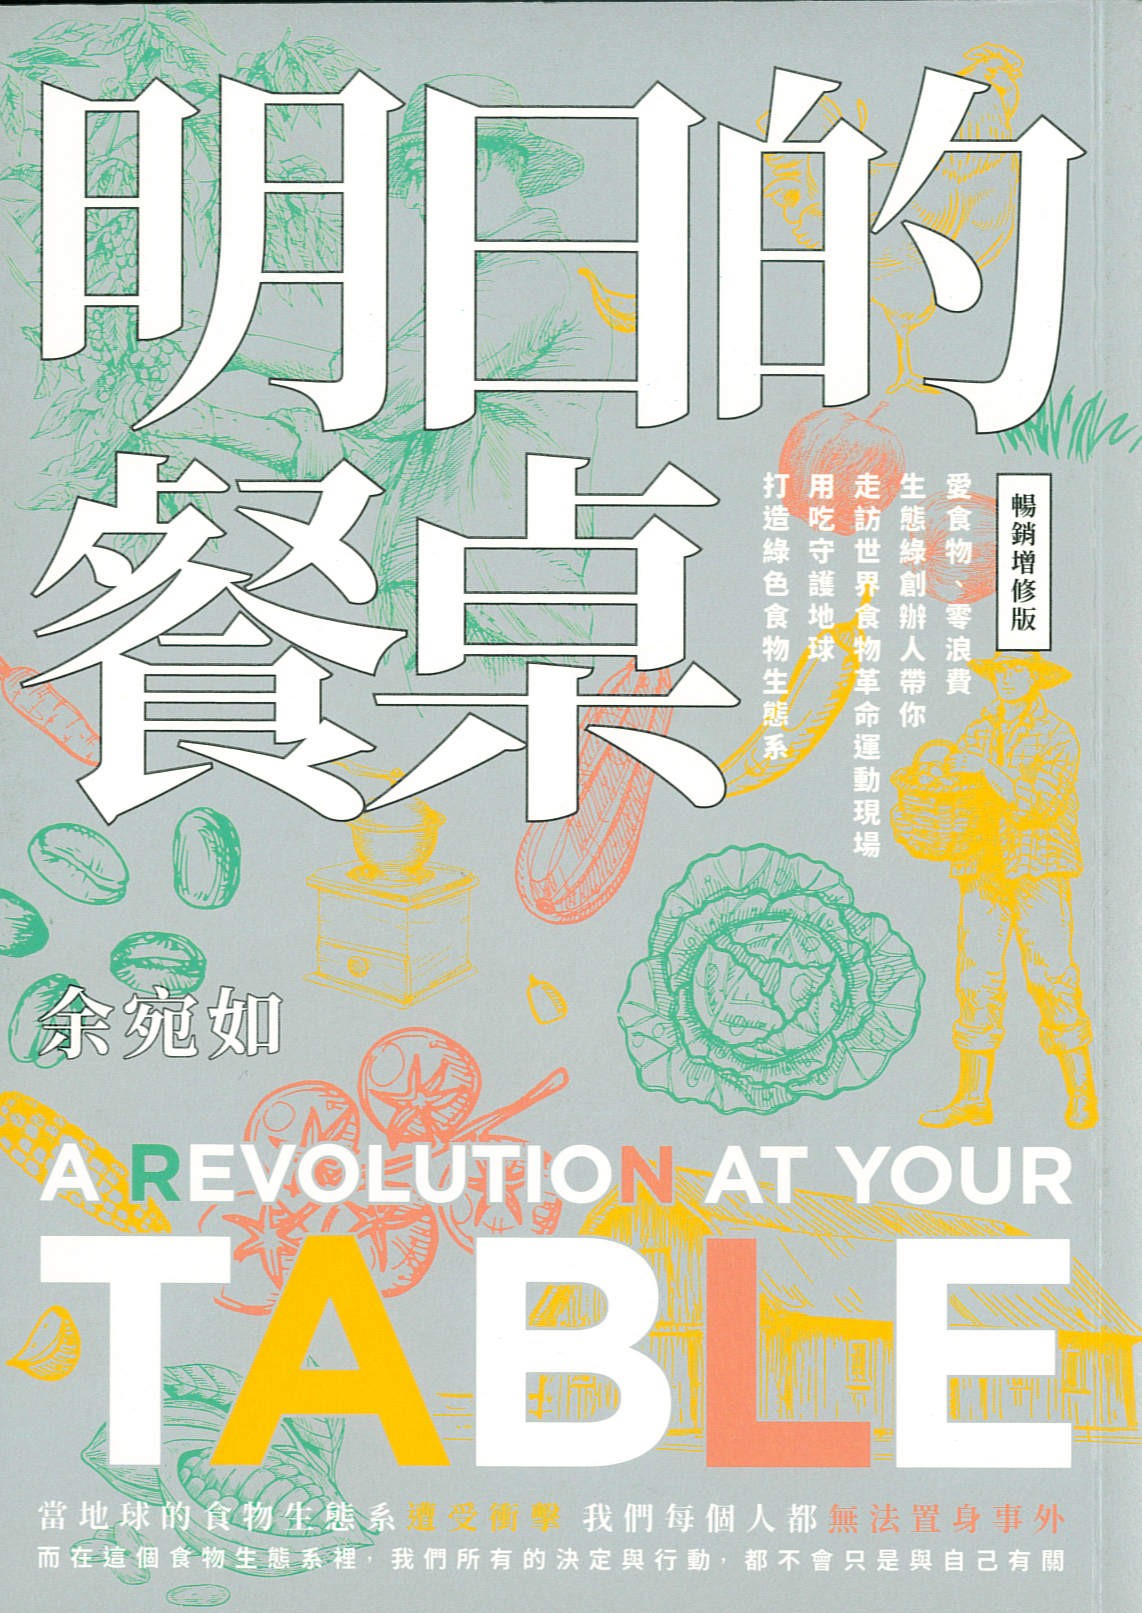 明日的餐桌 : 愛食物、零浪費 生態綠創辦人帶你走訪世界食物革命運動現場 用吃守護地球 打造綠色食物生態系 = A revolution at your table /